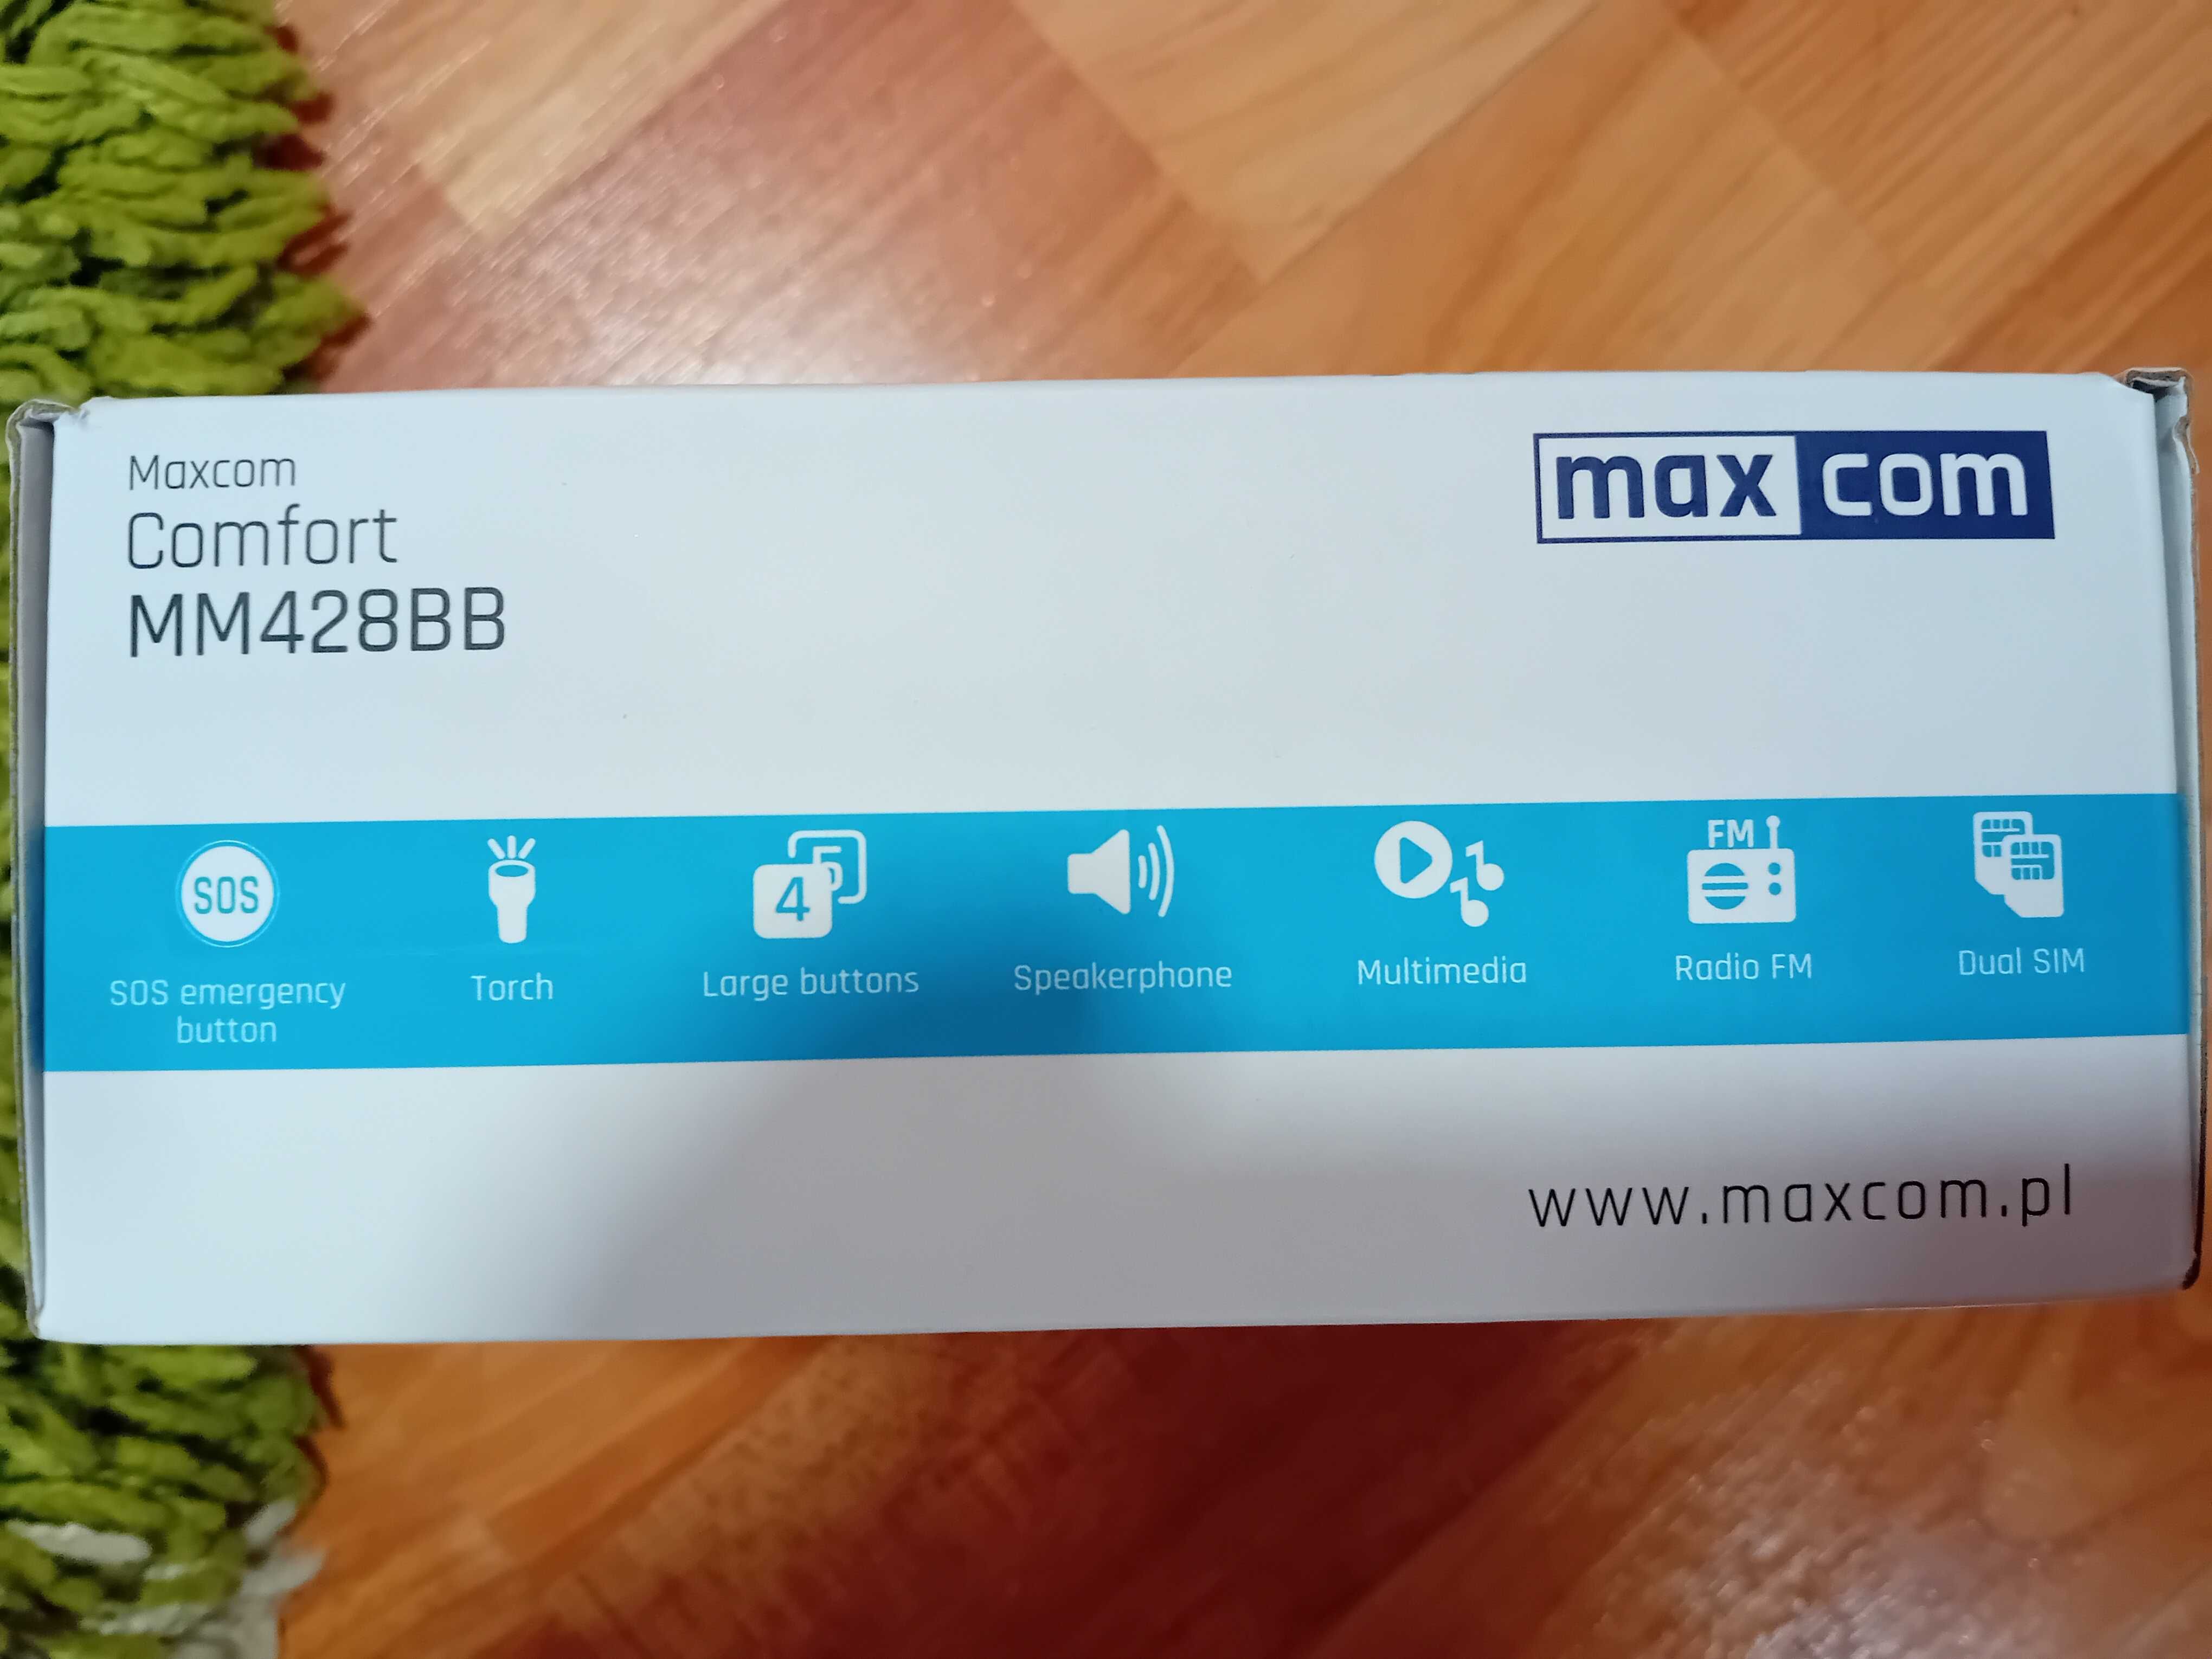 Maxcom Comfort MM428BB